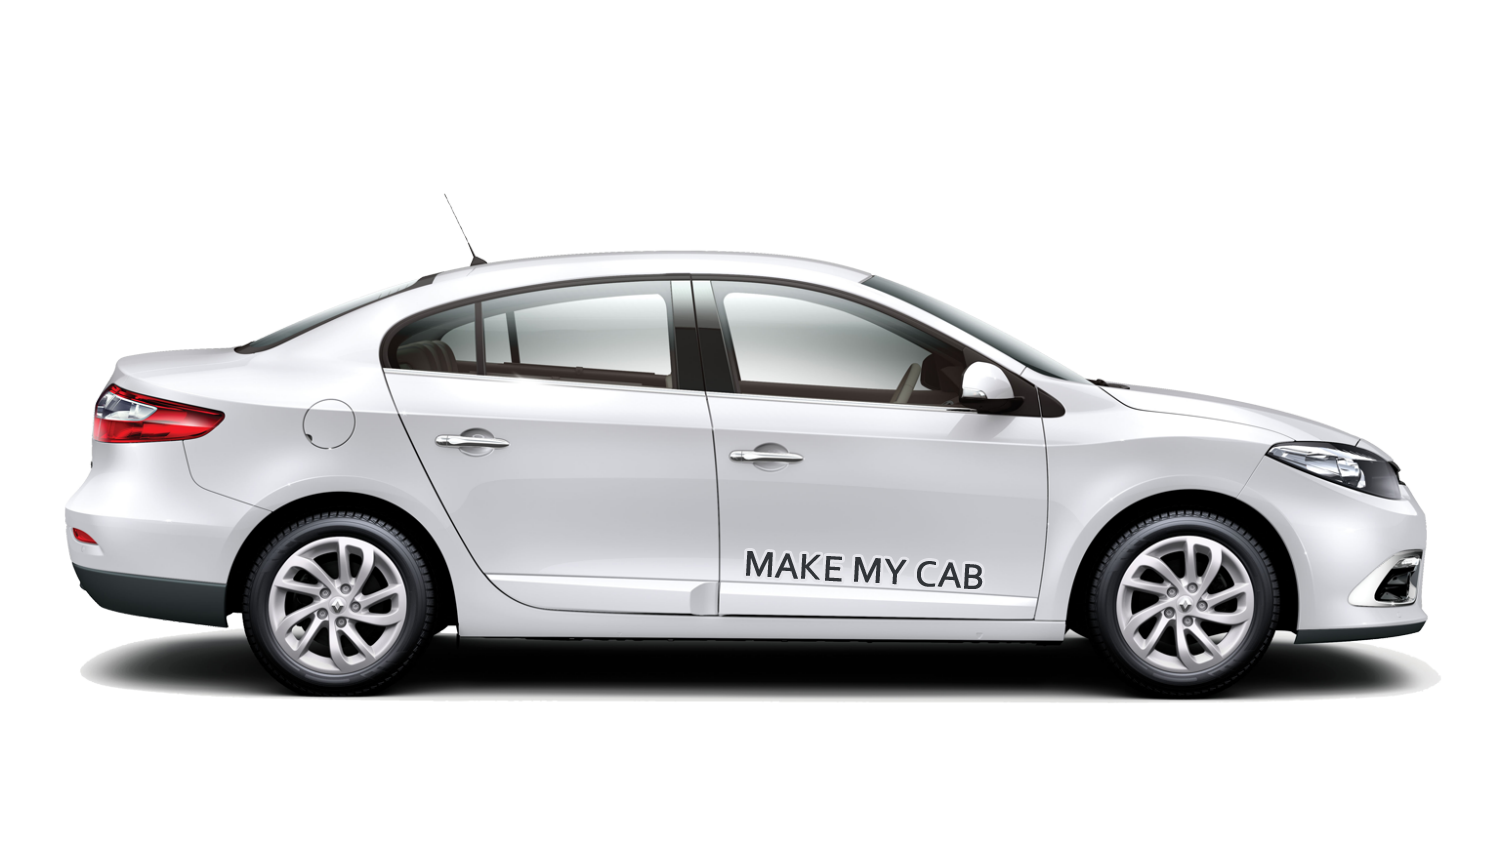 Cab Transparent Image